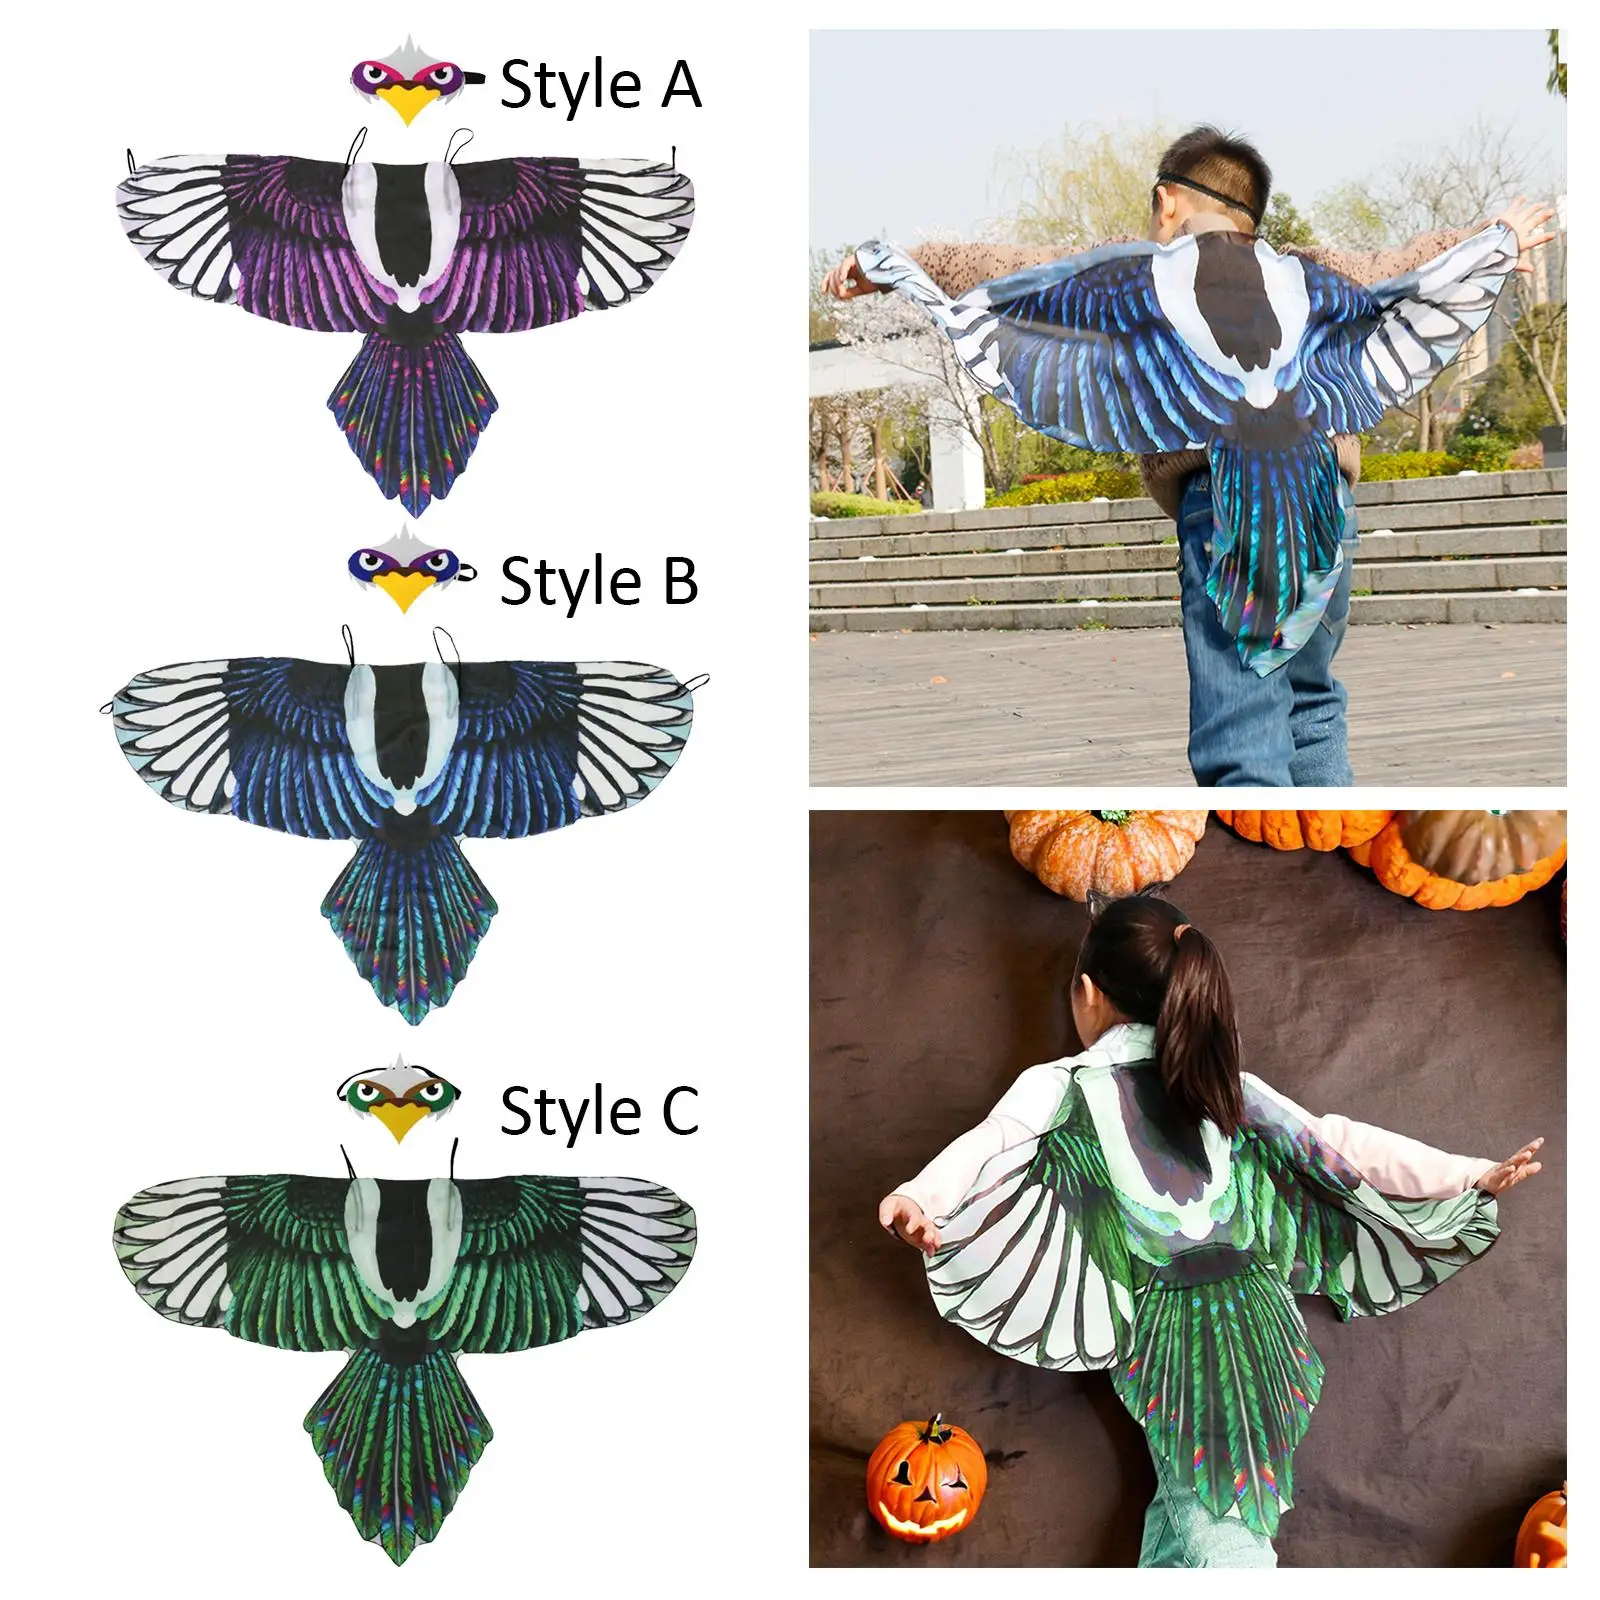 Костюмы с крыльями орла и птицы, аксессуары, костюм на Хэллоуин для косплея, тематические вечеринки, реквизит для фотосессий, сувениры на Хэллоуин, Маскарад - 5